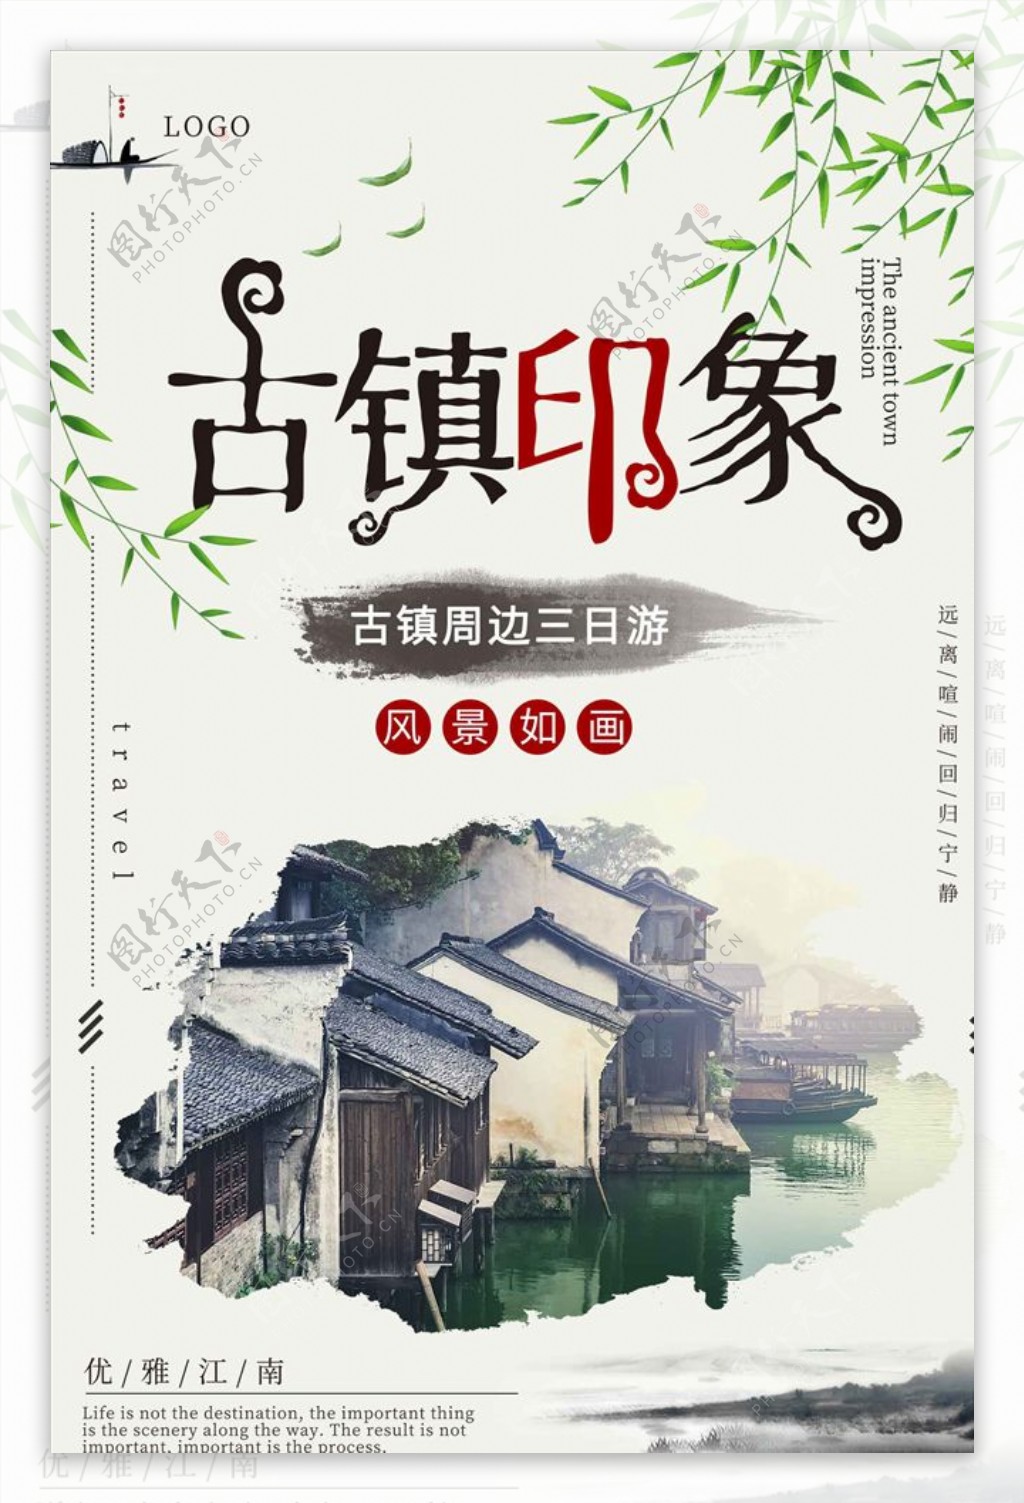 旅行中国风水墨创意海报